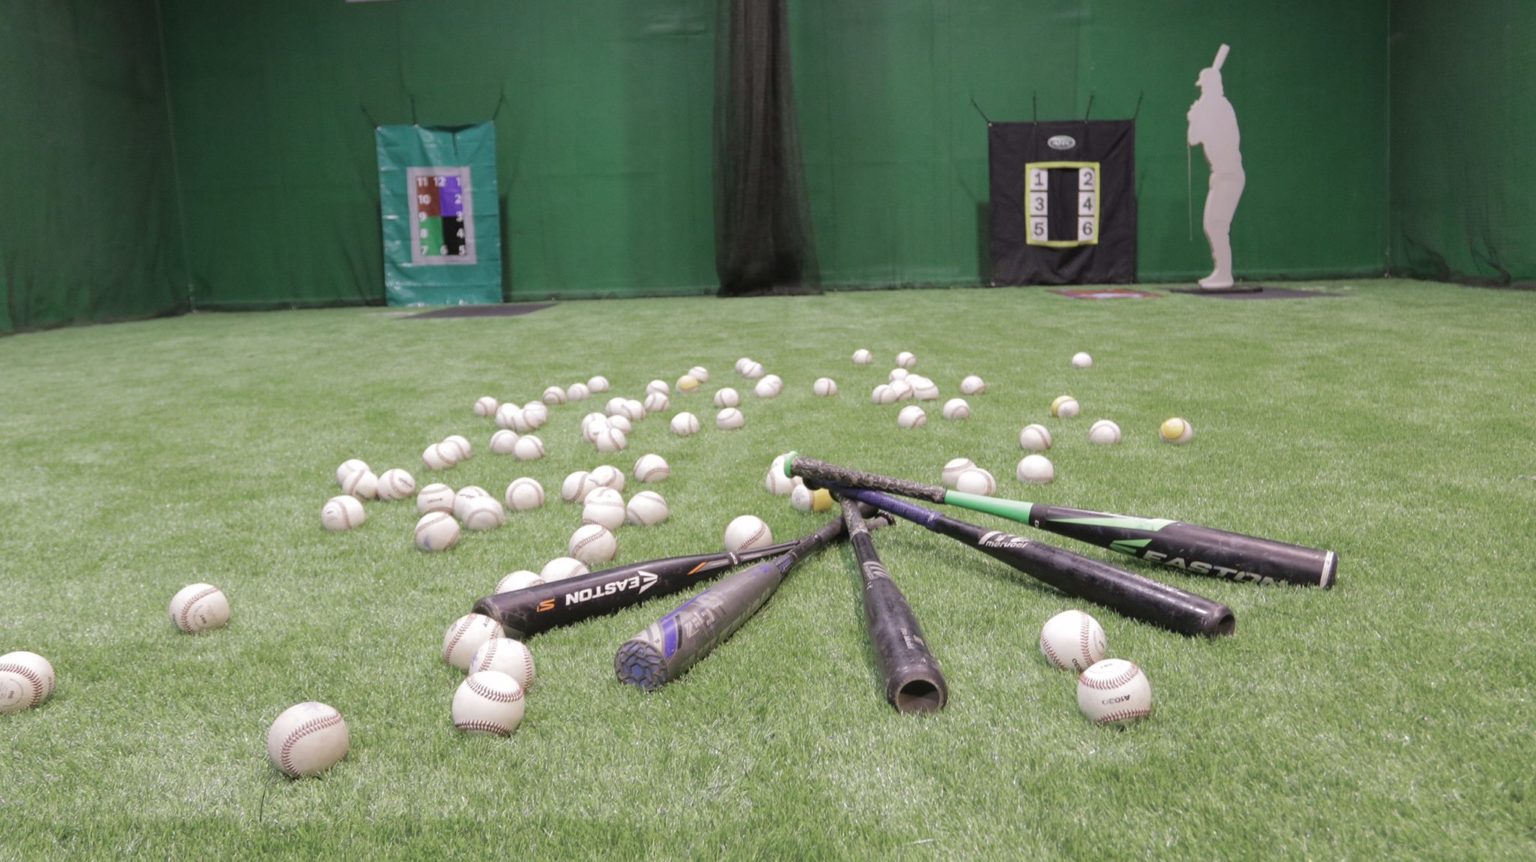 hittrax-baseball-simulator-for-batting-review-make-shots